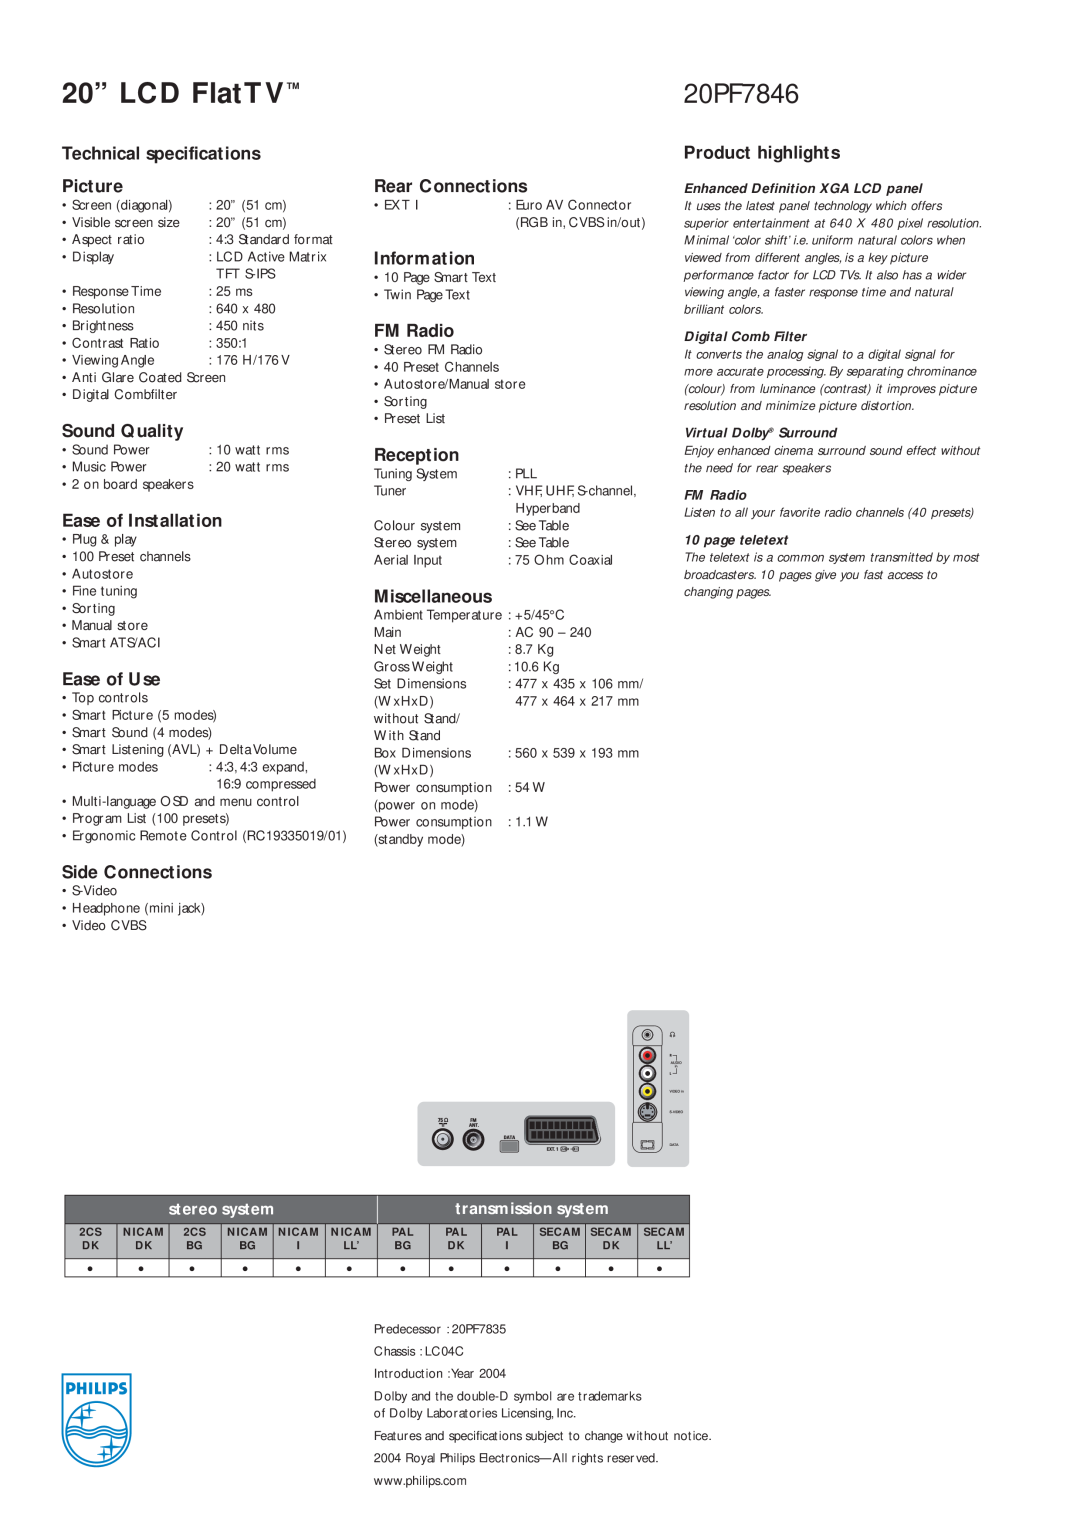 Philips 20PF7846 manual 20” LCD FlatTV 